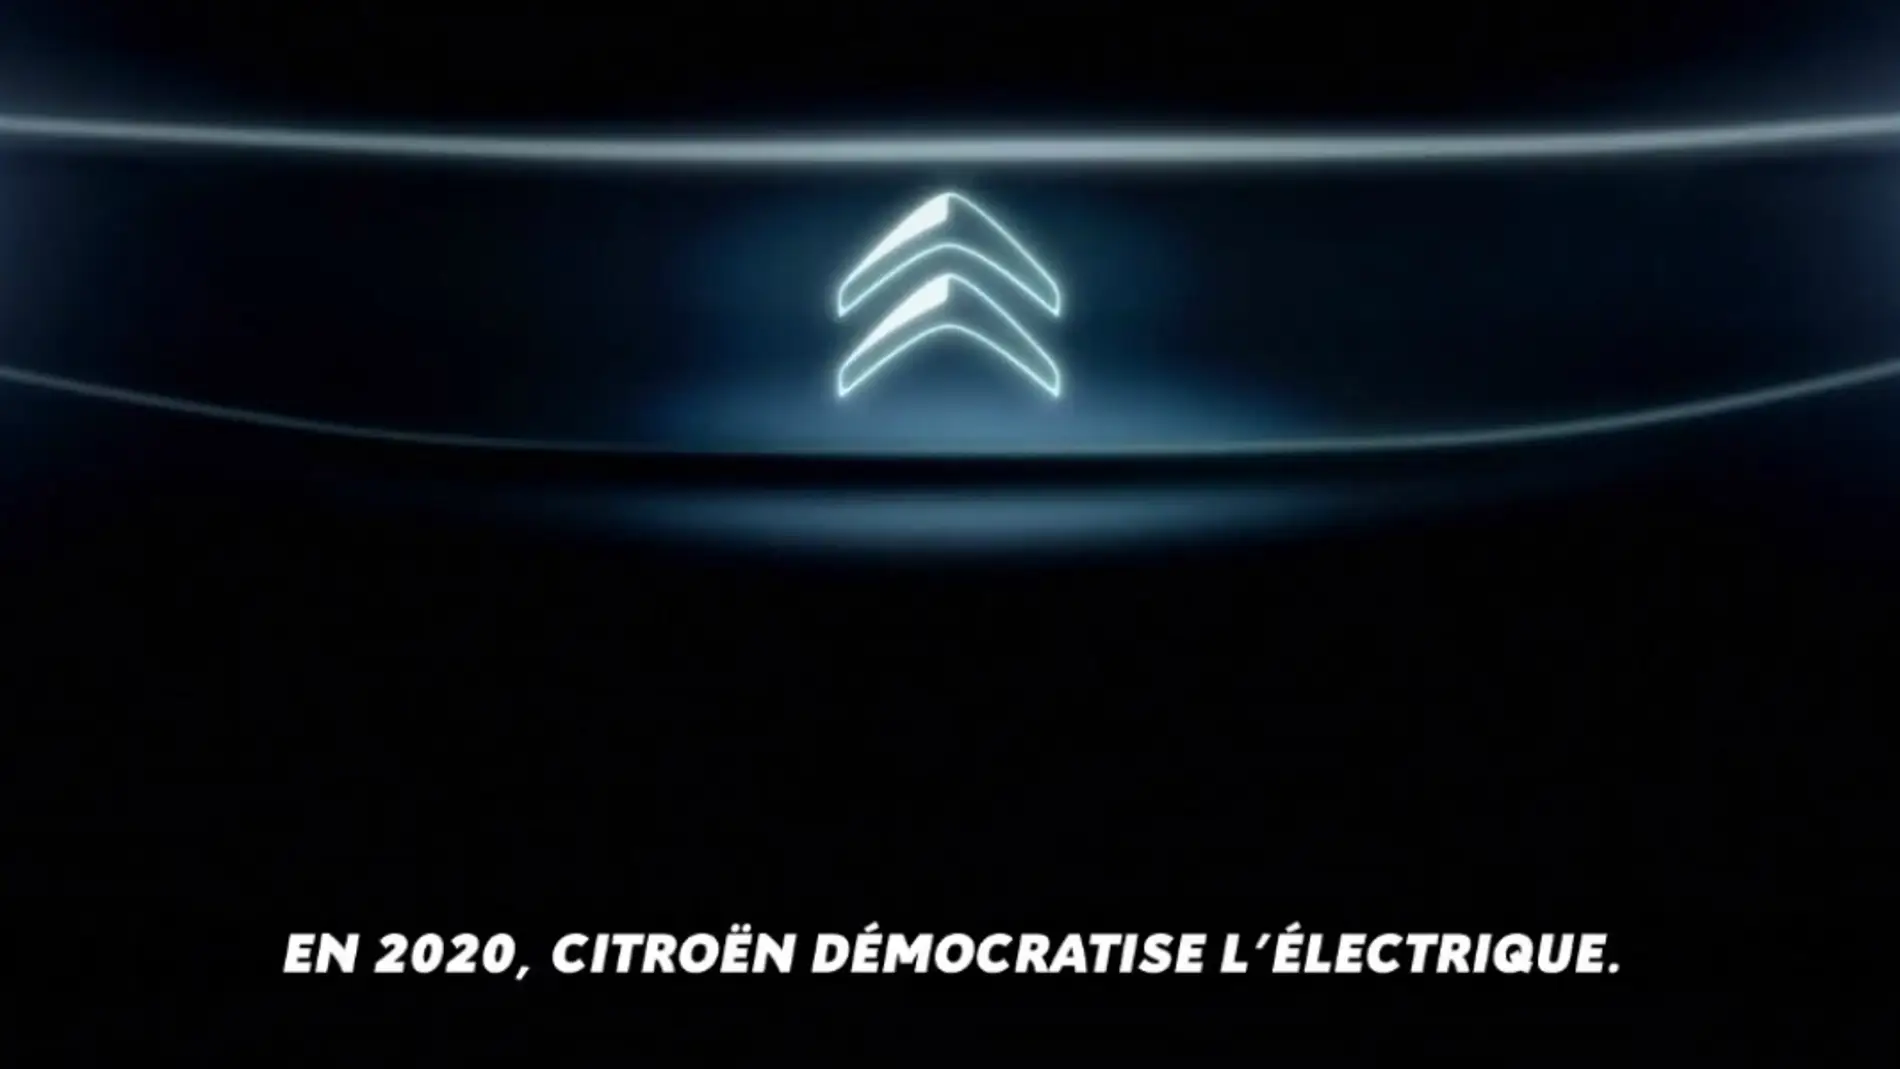 Citroën coche eléctrico 